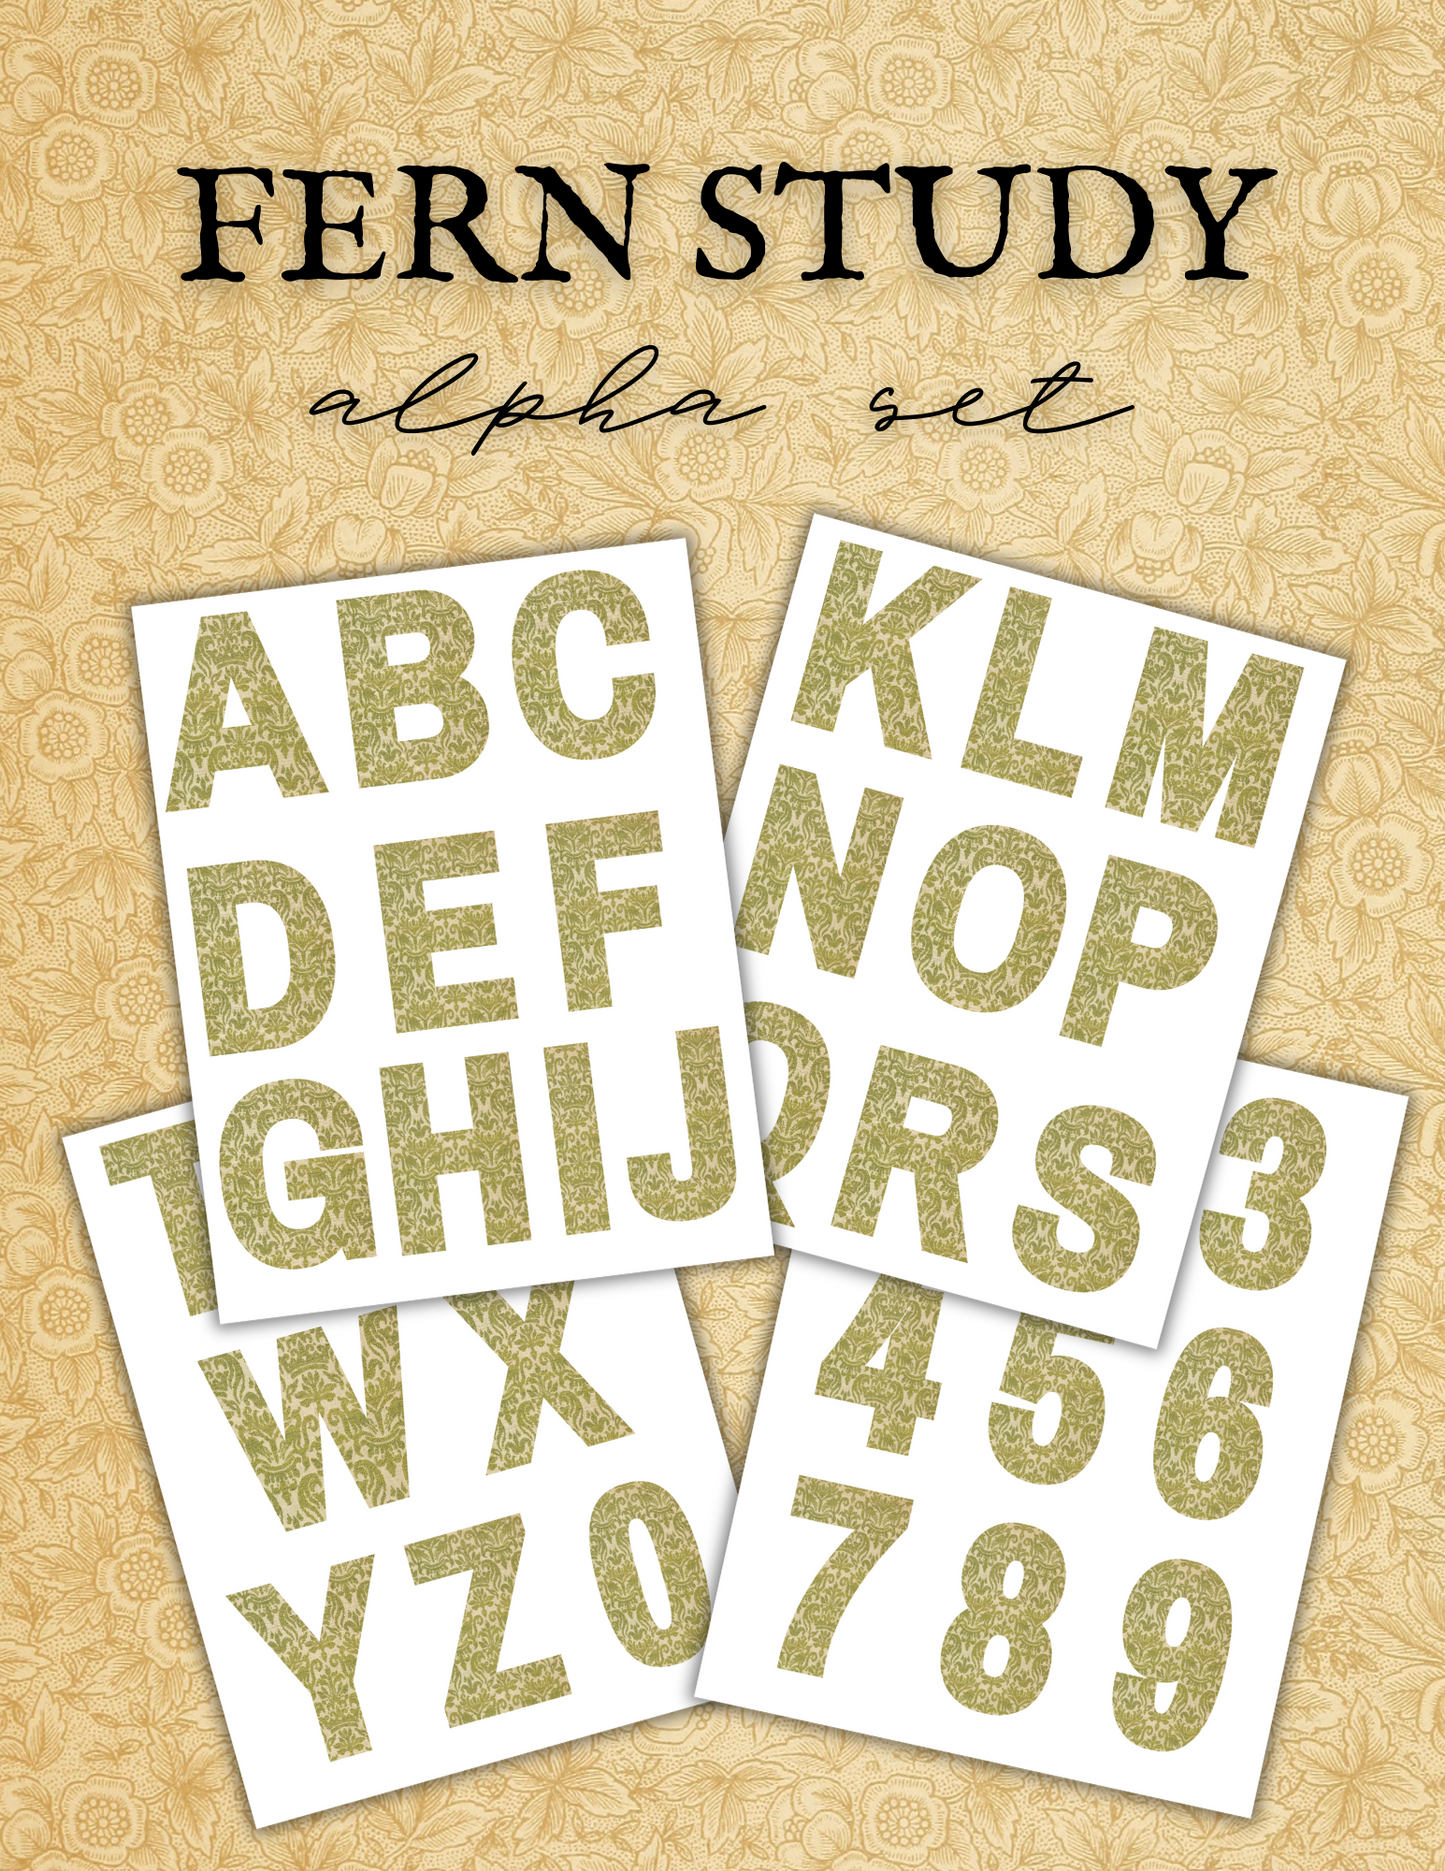 Fern Study Alpha Set